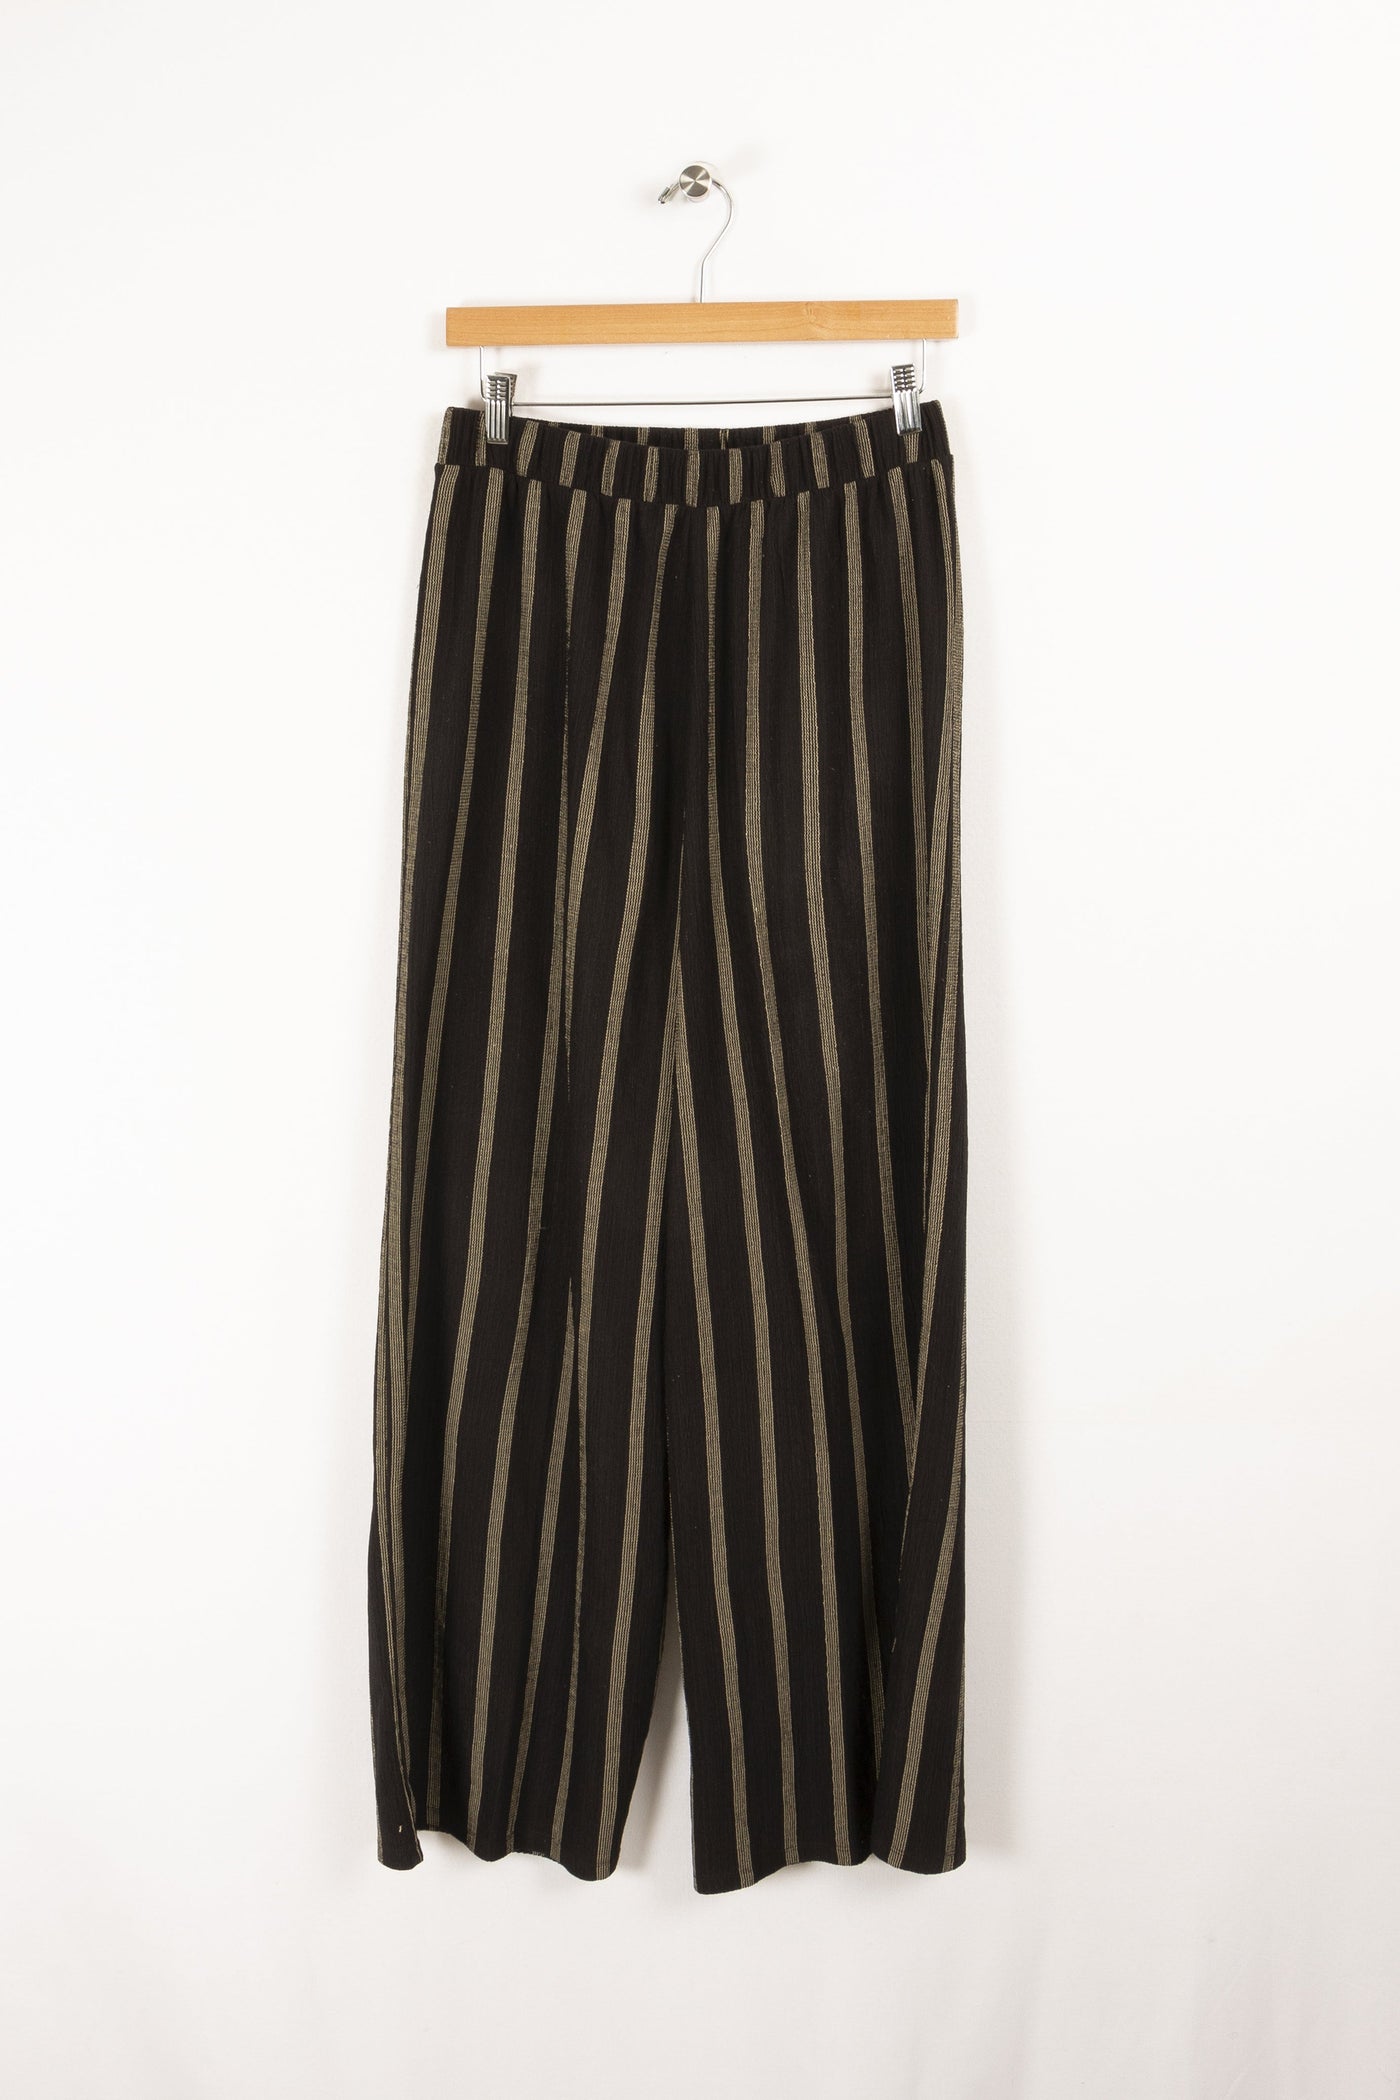 Pantalon noir et blanc - S/36